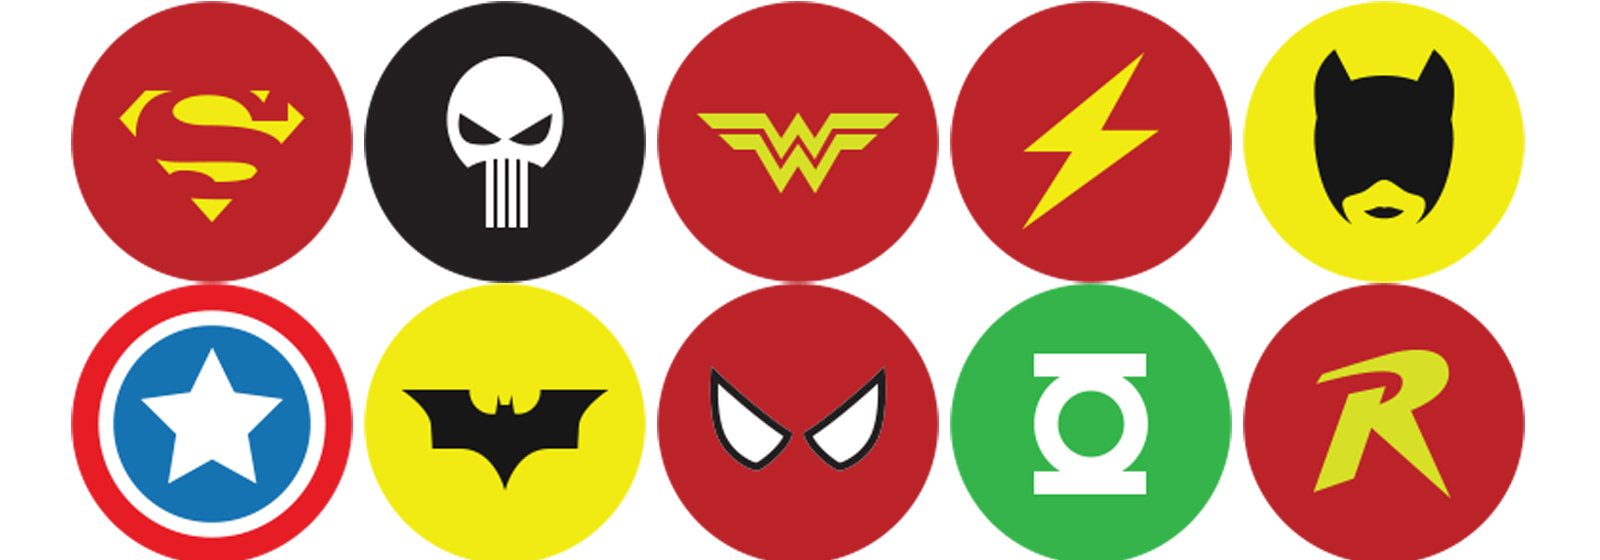 Superhero Logos And Names Symbols Icon - Free Icons